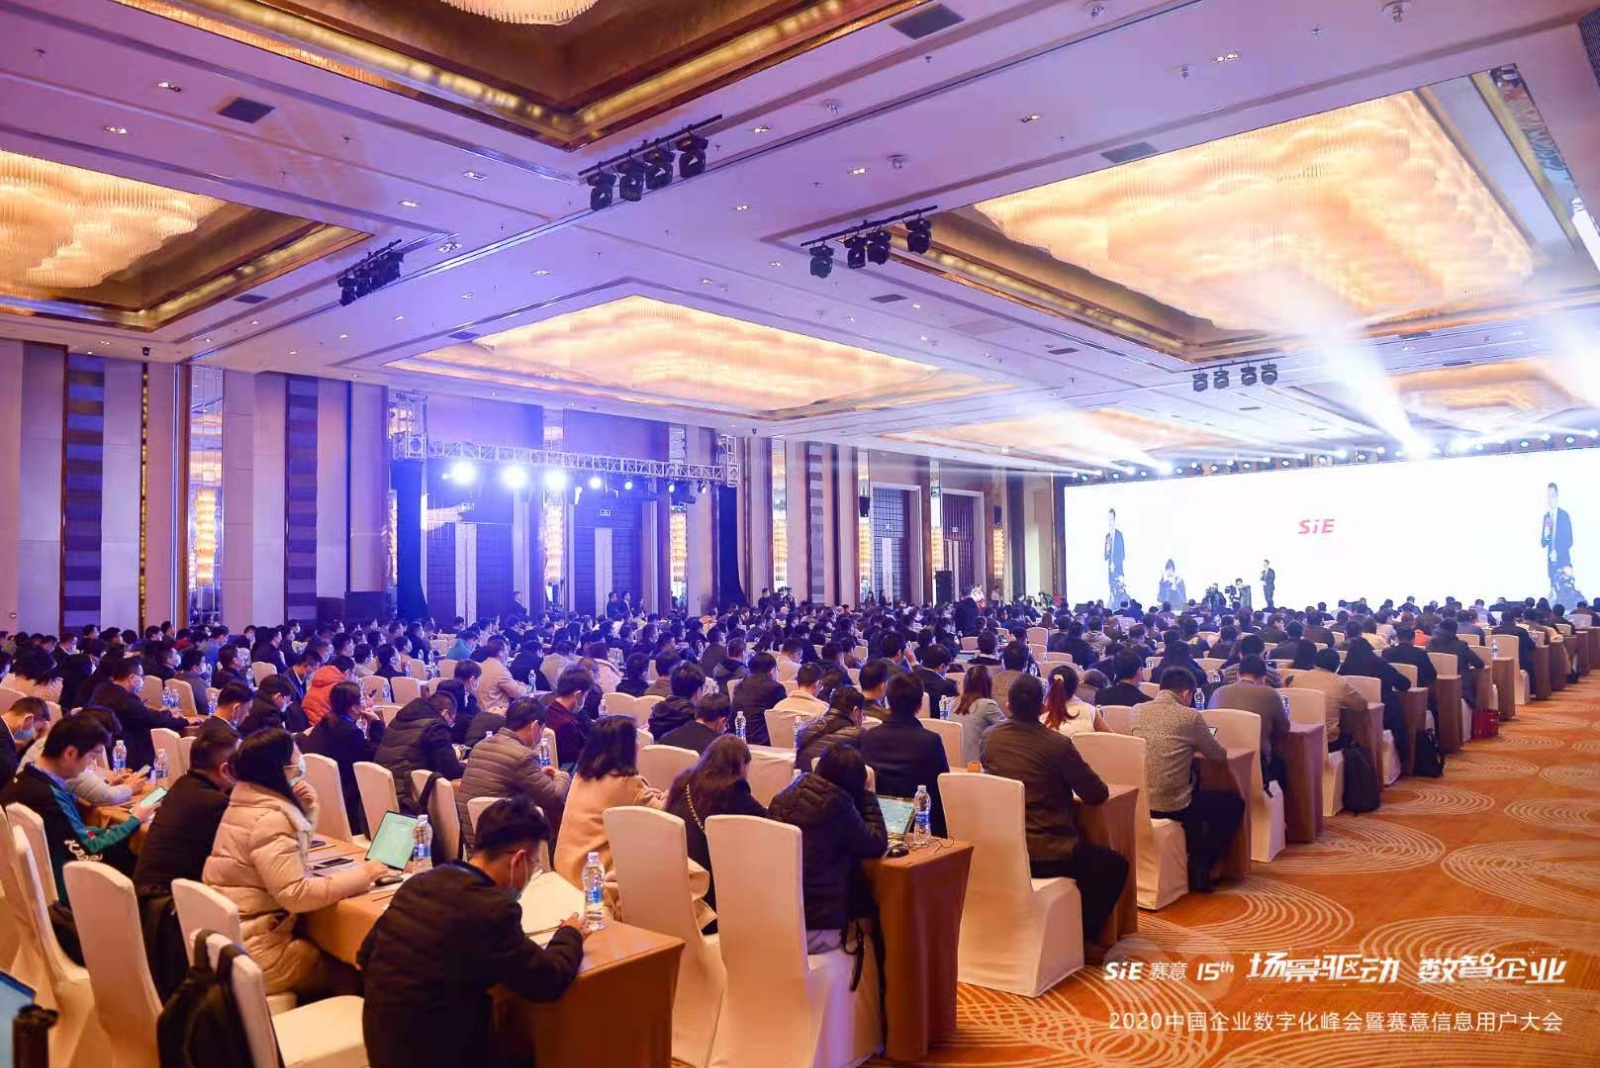 佛山电视台现场直击2020中国企业数字化峰会暨赛意信息用户大会